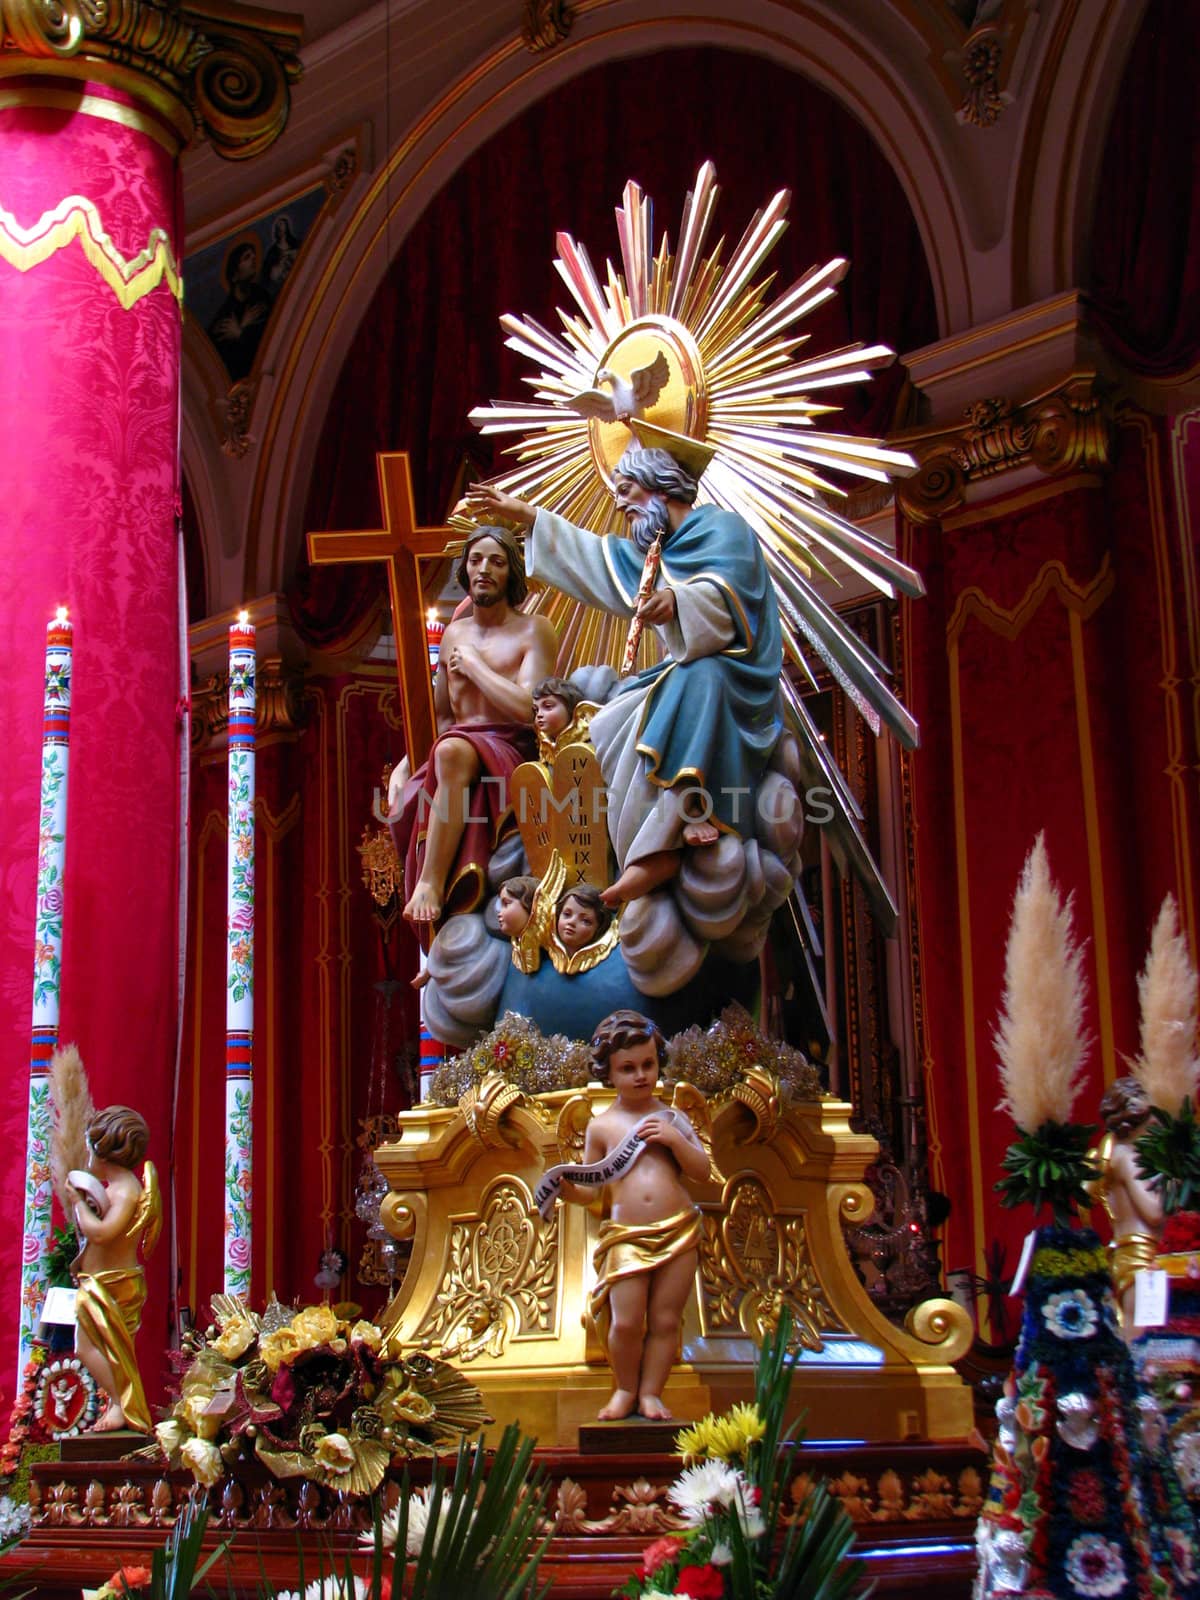 A statue representing The Holy Trinity in Marsa, Malta.